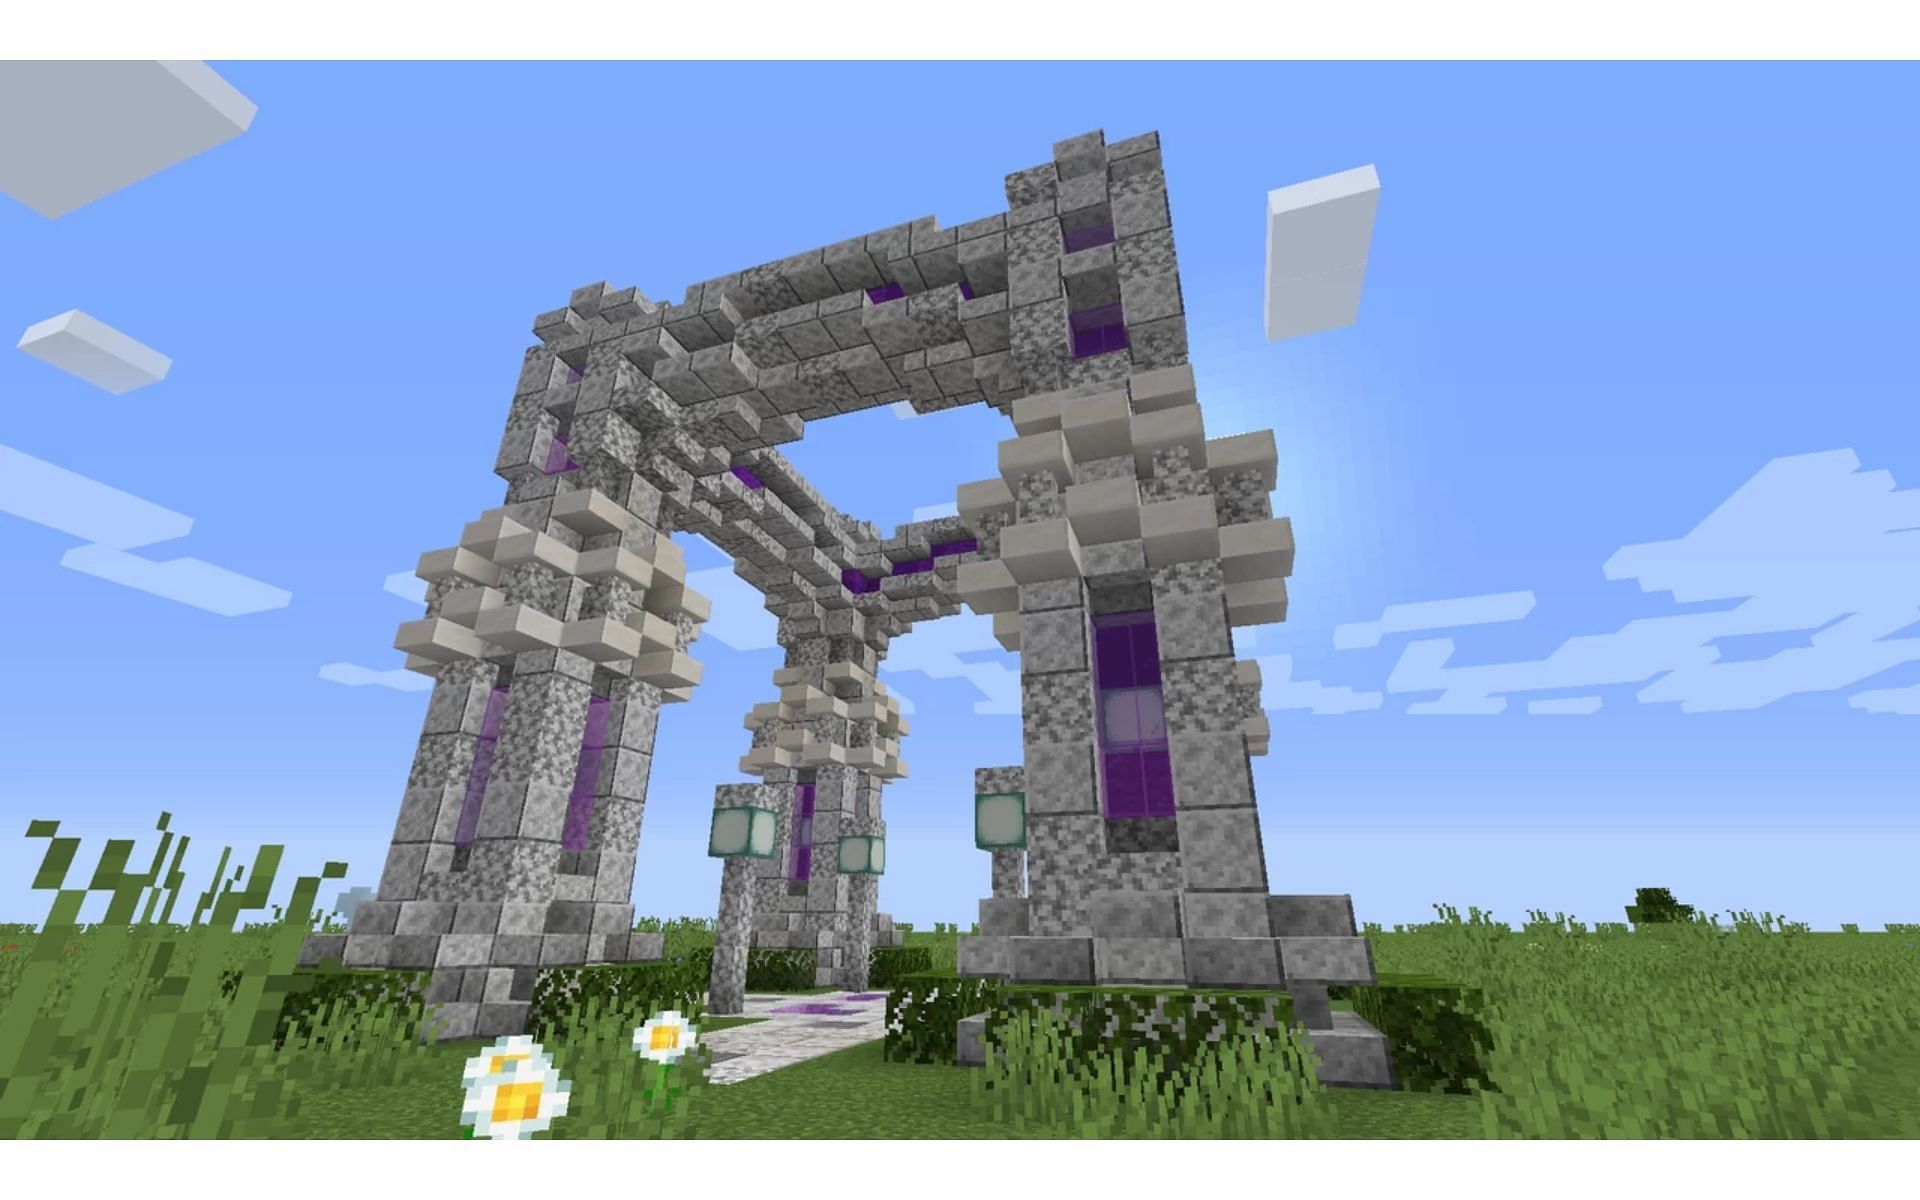 Добавив всплеск цвета, игроки могут выделить свою арку среди остальных (Изображение взято с Planet Minecraft)